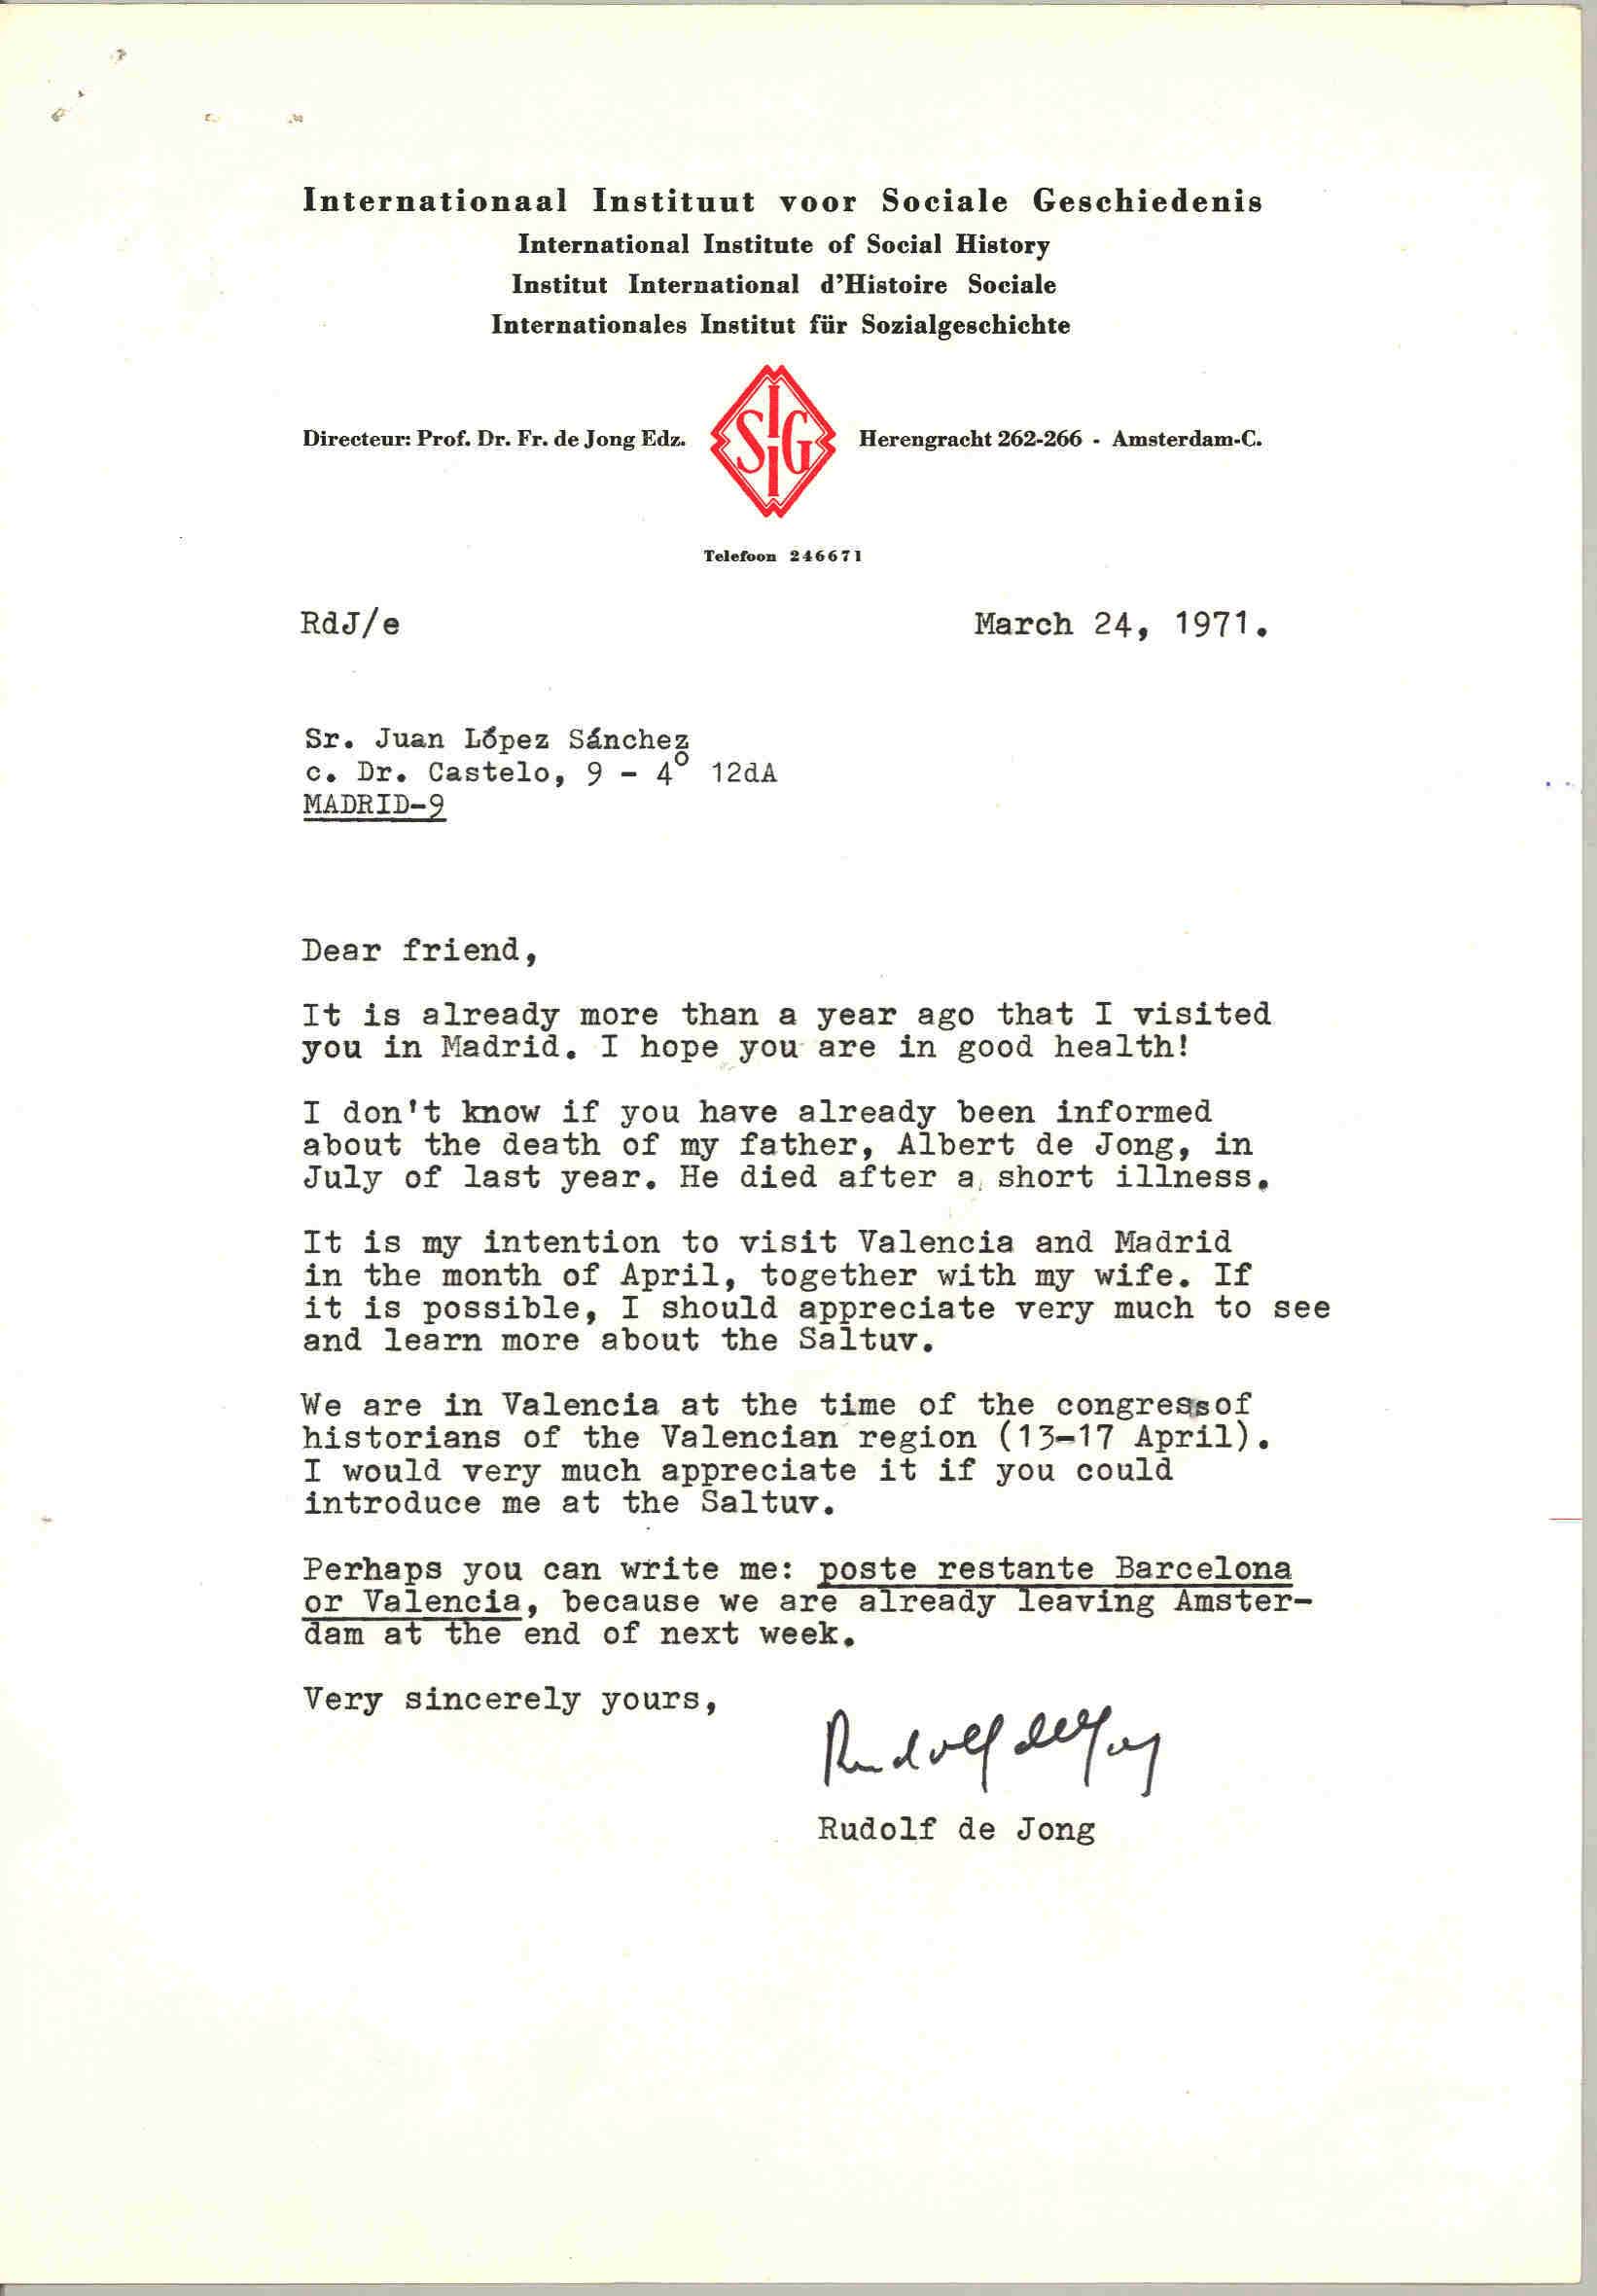 Carta de Rudolf de Jong (director del Instituto Internacional de Estudios Sociales de Historia) comunicándole la muerte de su padre y su intención de visitar Madrid y Valencia